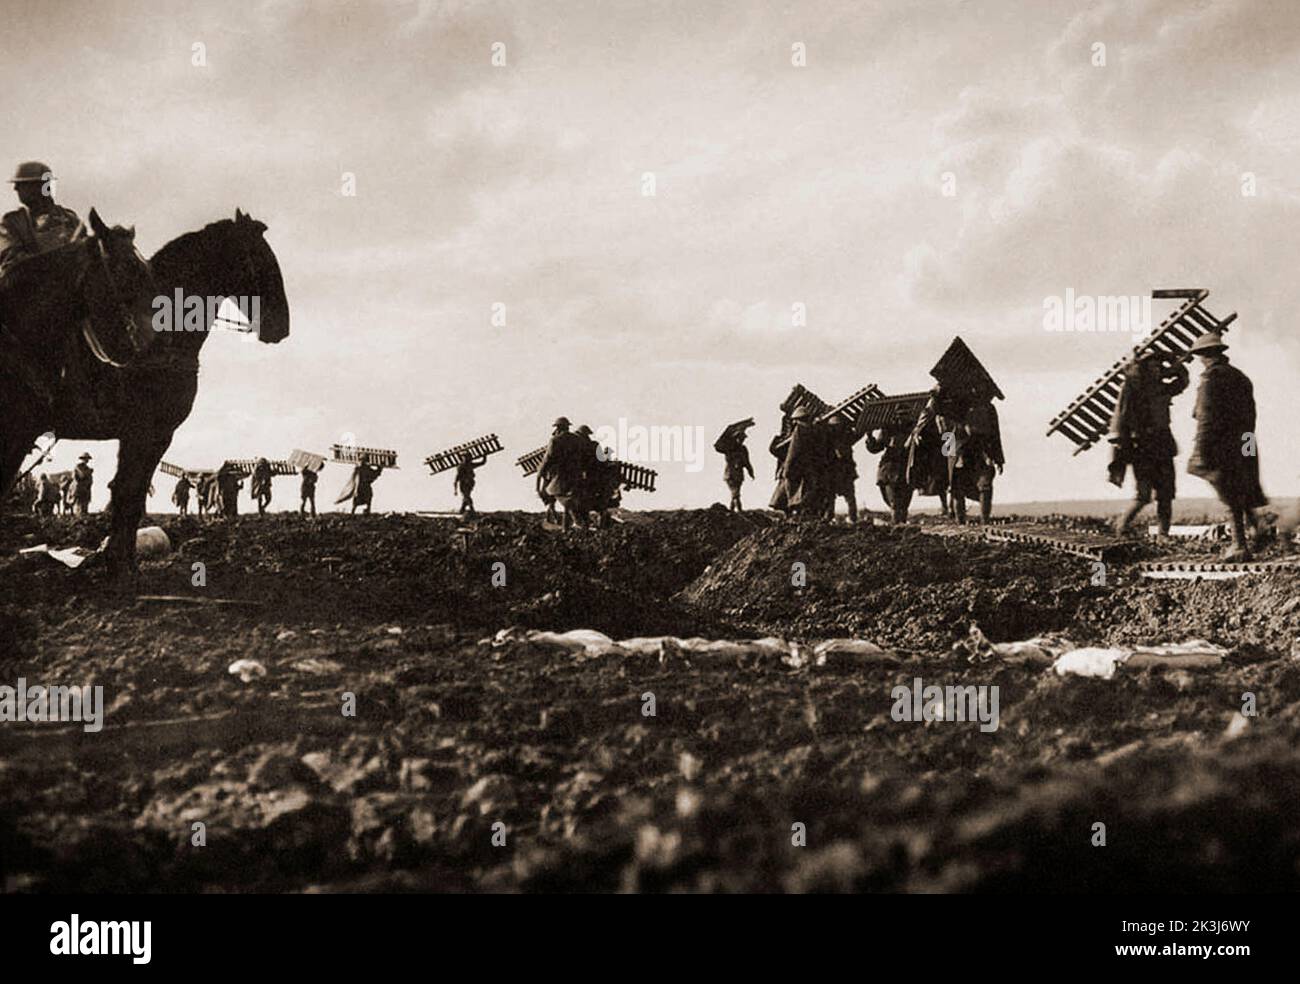 Soldati che trasportano anatre durante la terza Battaglia di Ypres del 1917, progettata da Sir Douglas Haig per catturare la cresta di Passchendaele. Fotografia di Frank Hurley (1885 1962) un fotografo australiano. Foto Stock